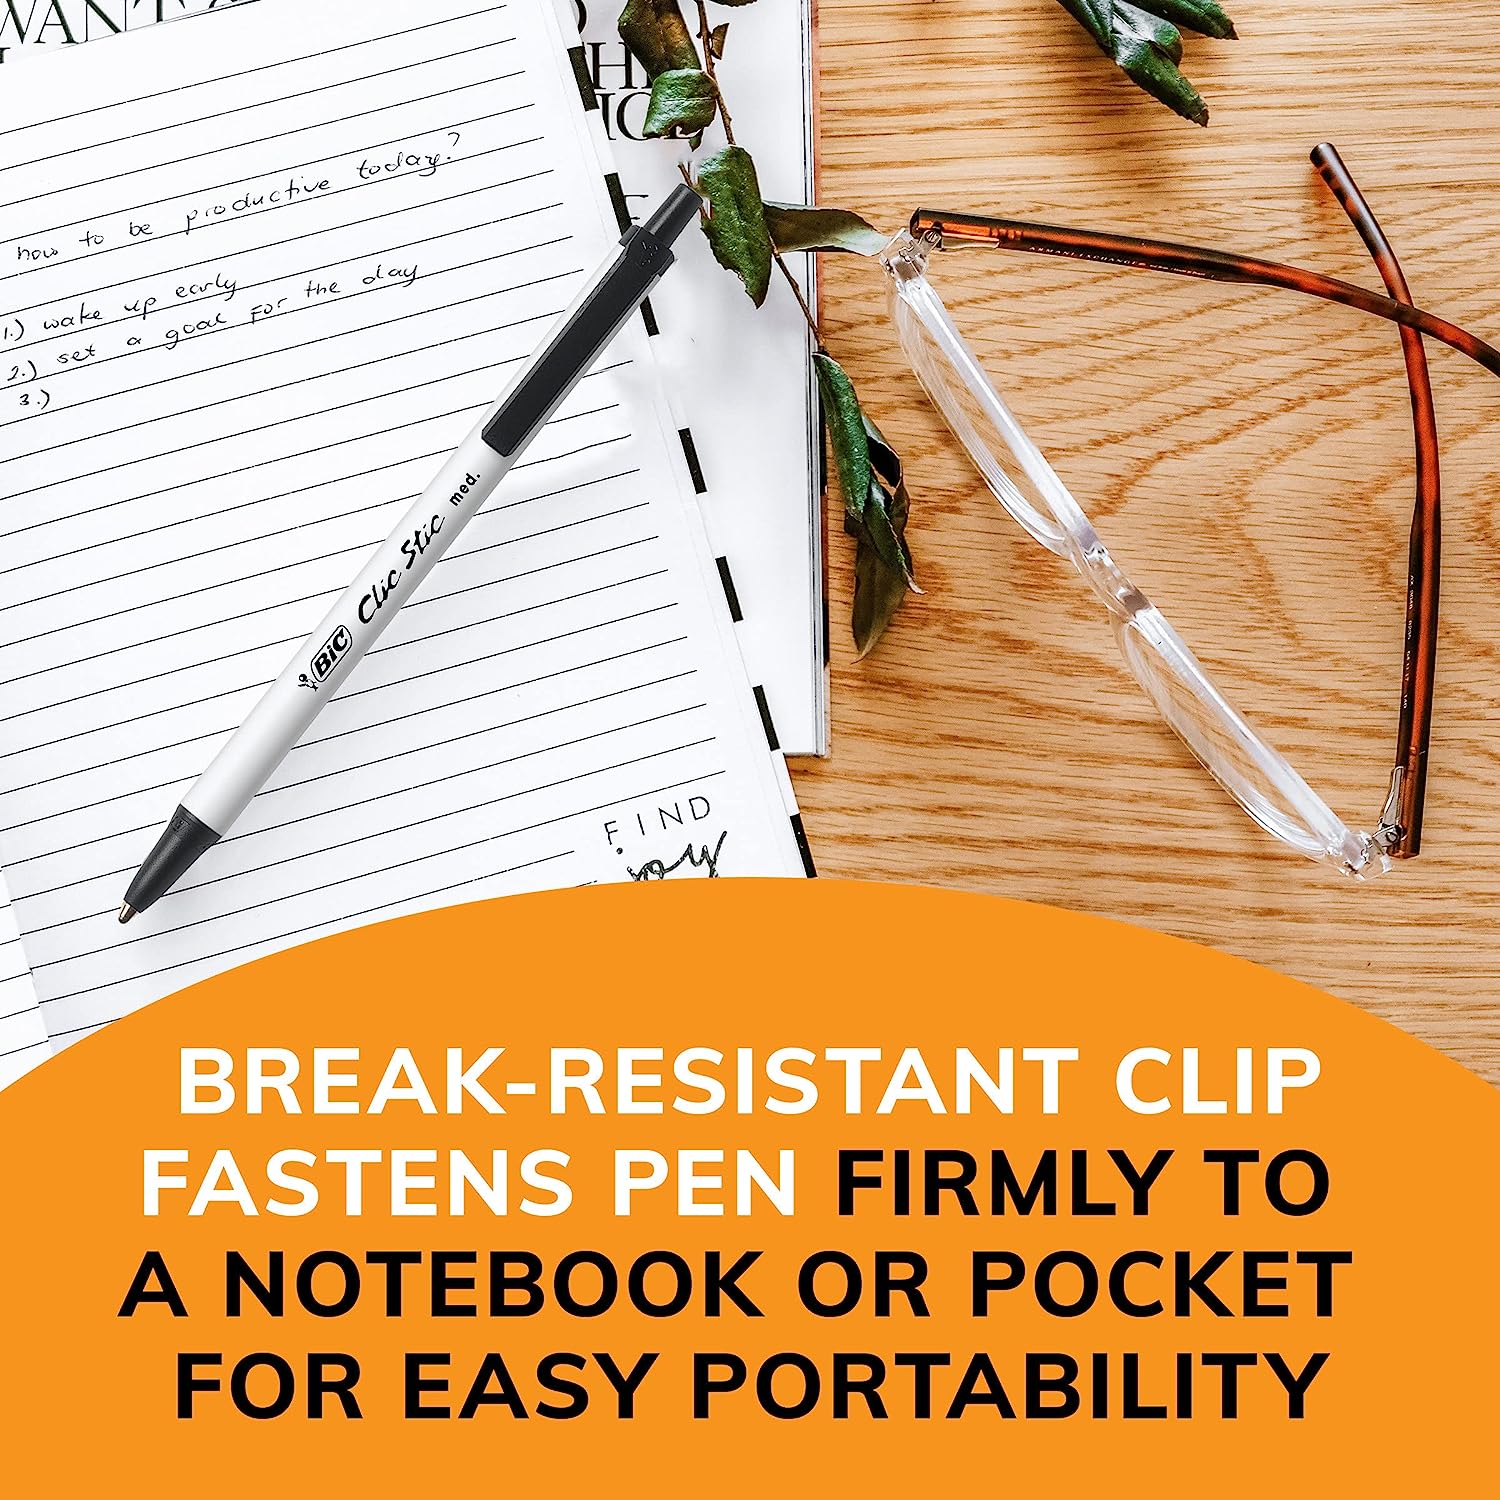 Bút bi gọn nhẹ, ngòi êm Bic Clic Stic Retractable Ball Pen, Cỡ ngòi 1.0mm, 1 cây viết màu xanh hoặc đen